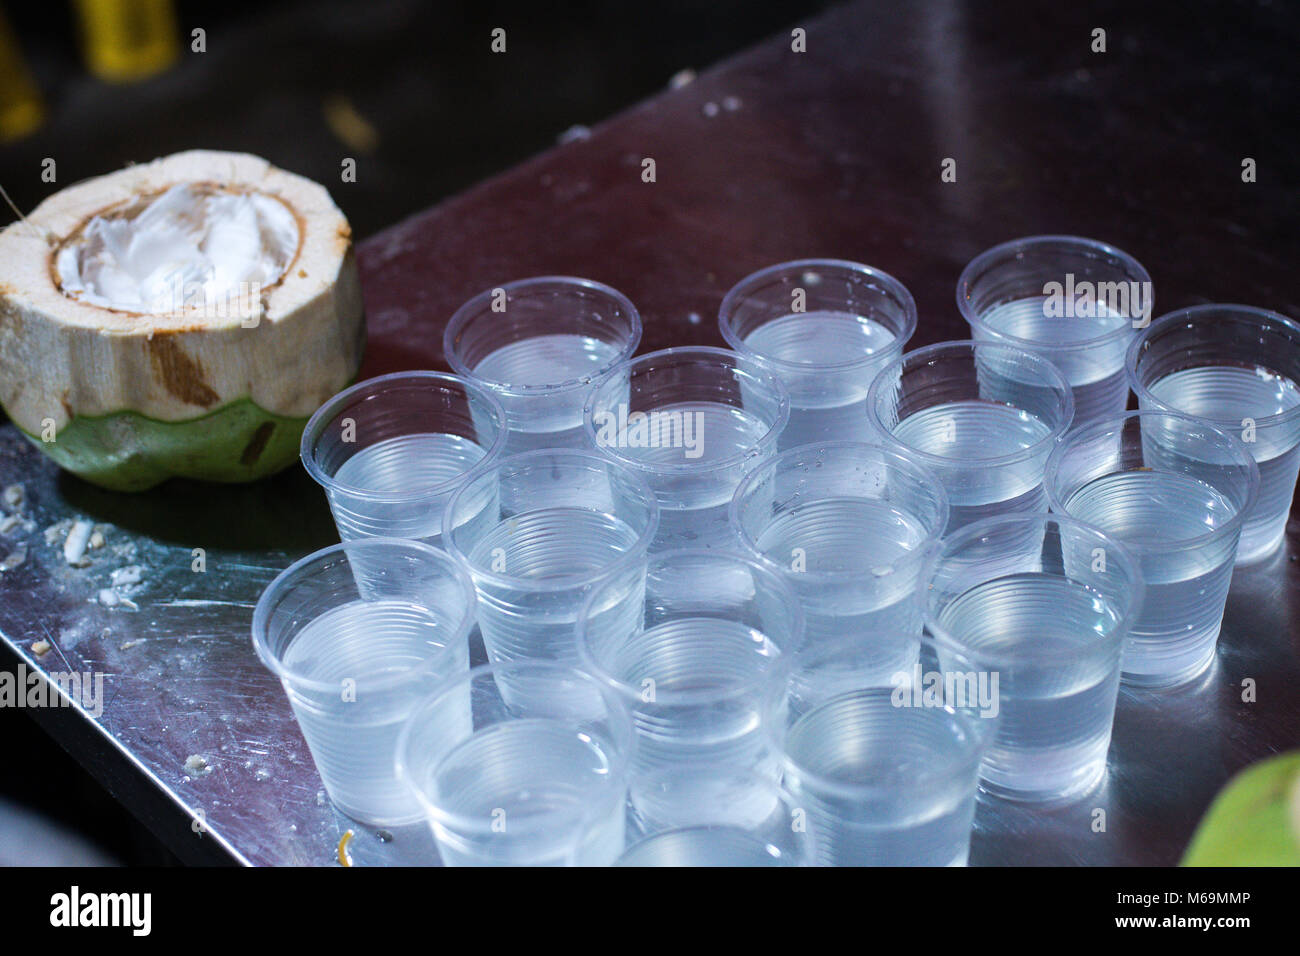 Le jus de noix de coco, verre en plastique d'eau de coco Photo Stock - Alamy